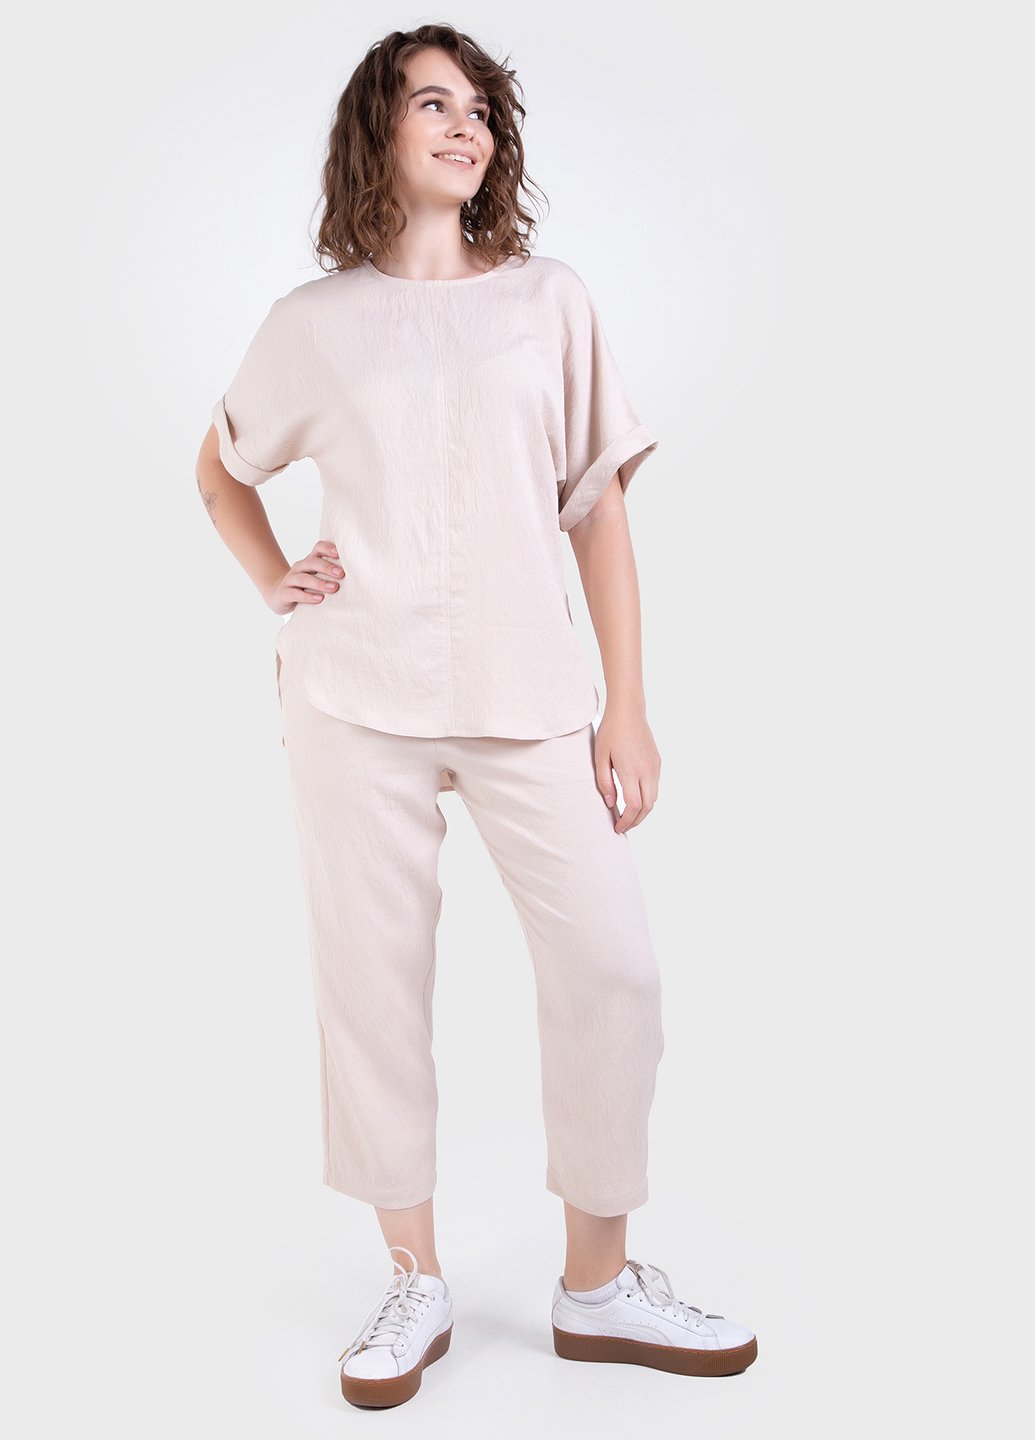 Купити Літній костюм жіночий двійка бежевого кольору: штани, футболка Merlini Санремо 100000149, розмір 42-44 в інтернет-магазині